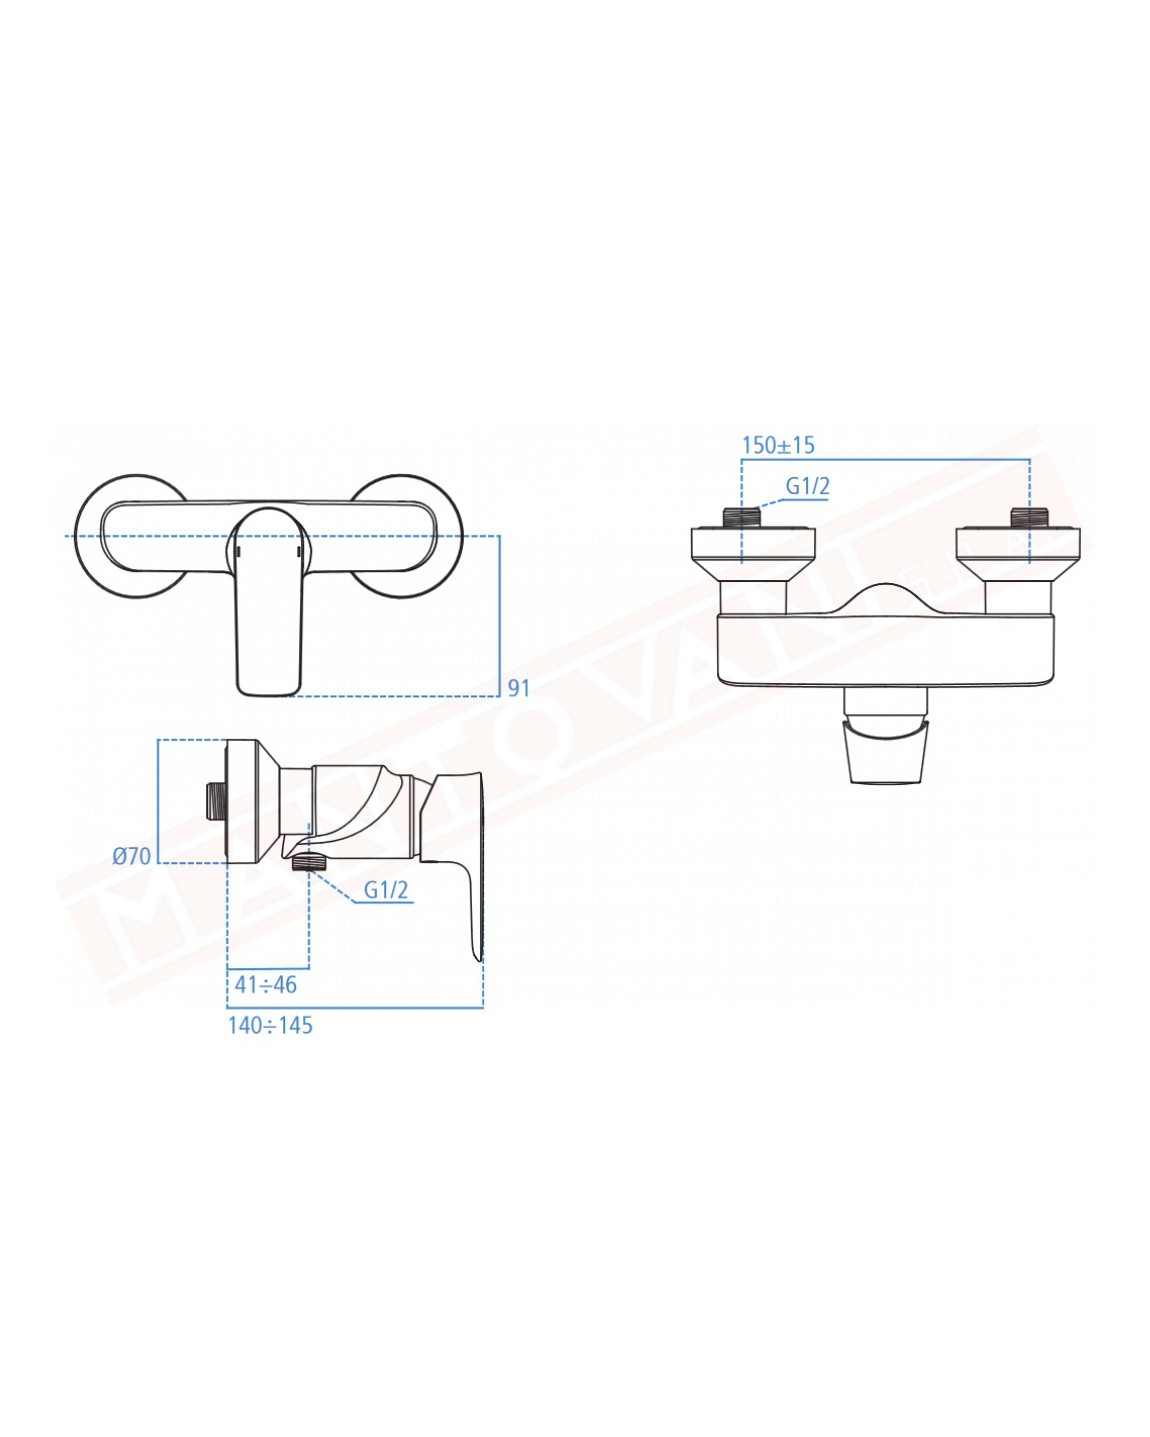 Connect Air rubinetto esterno doccia Ideal Standard